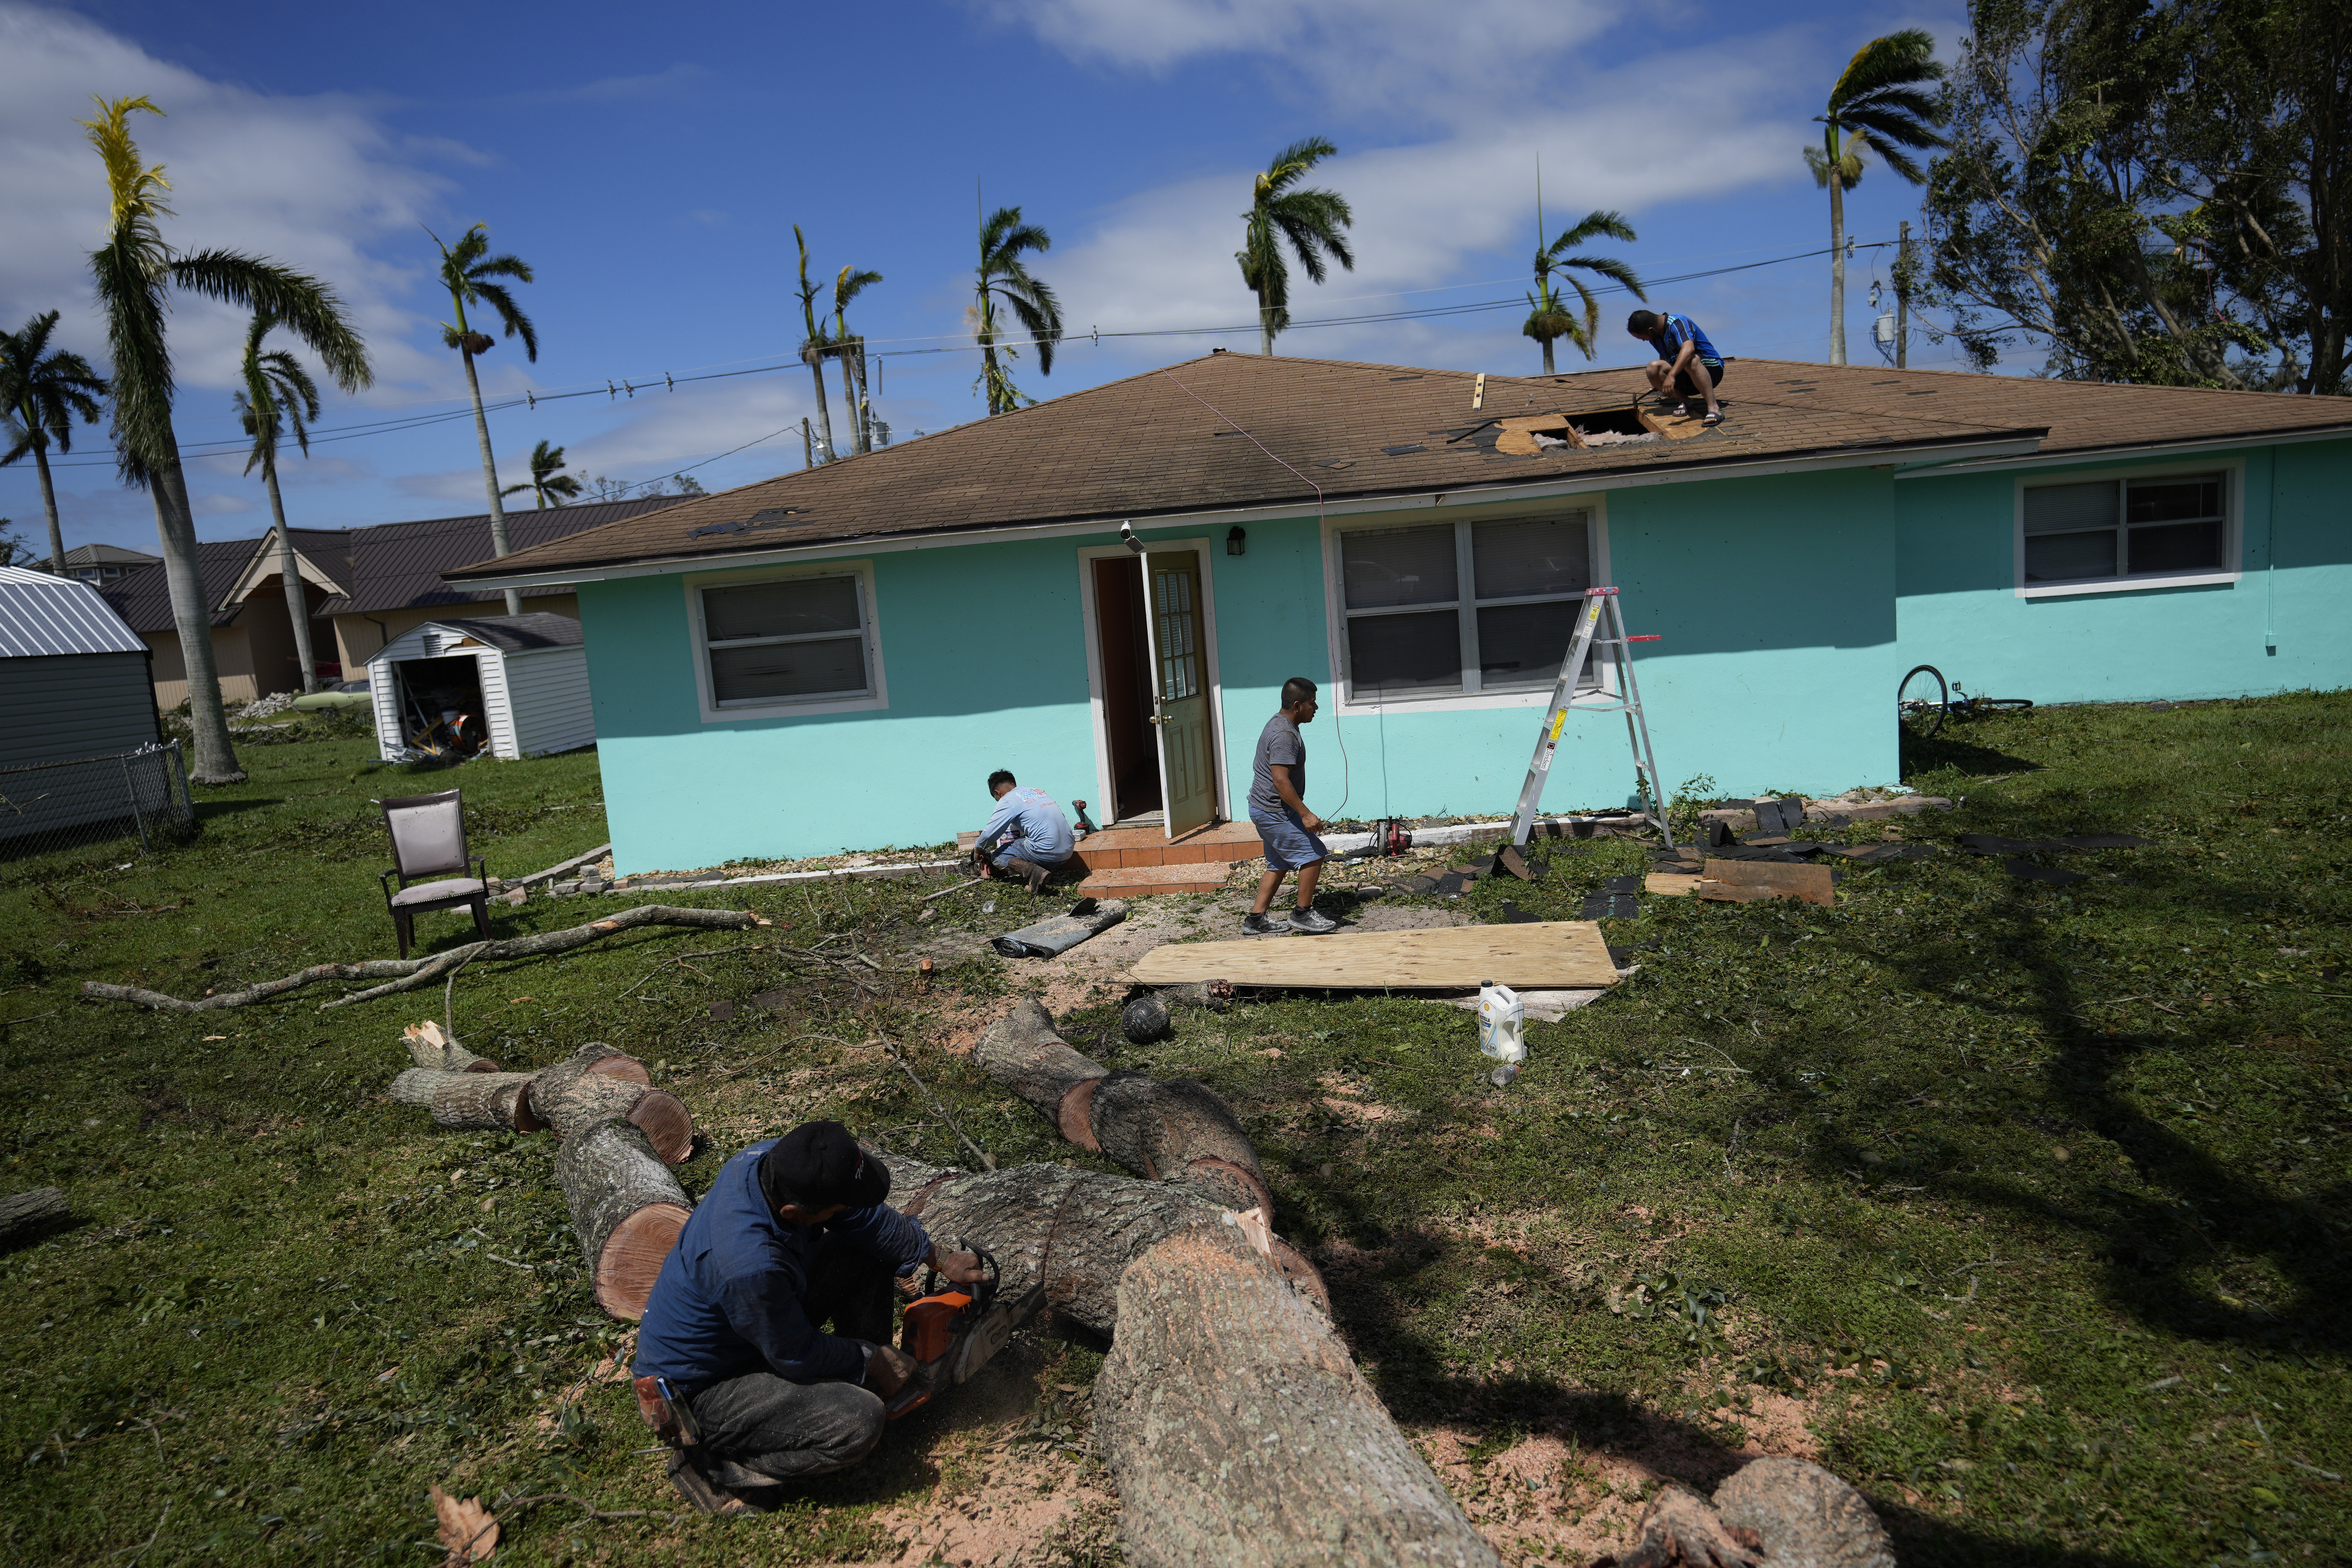 Los miembros de la familia trabajan juntos para reparar una casa después de que cayó la rama de un árbol y dañó el techo, en Fort Myers, Florida, el jueves 29 de septiembre de 2022